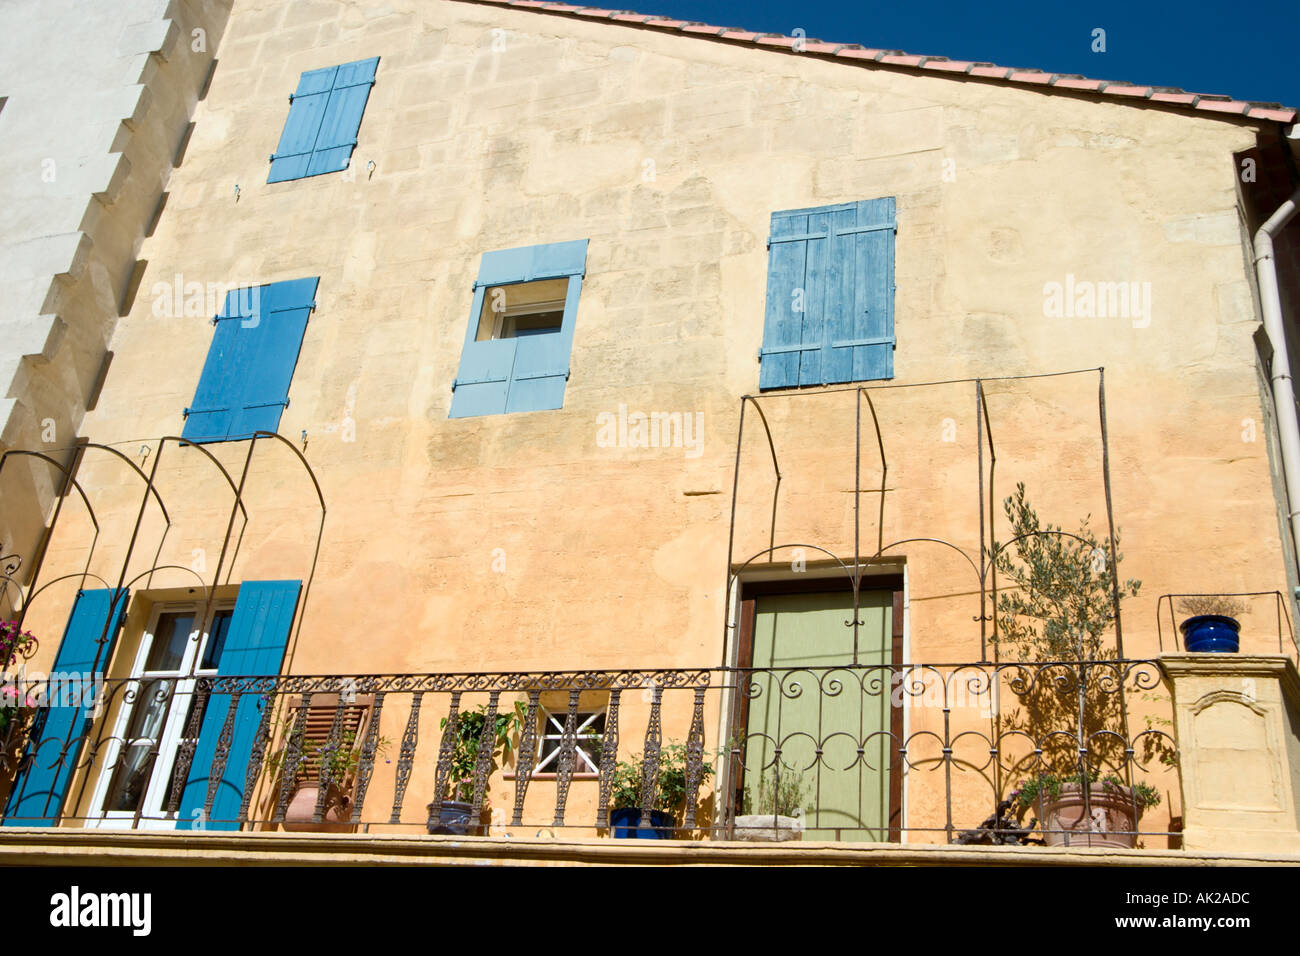 Des fenêtres à volets sur une vieille maison à Arles, Provence, France Banque D'Images